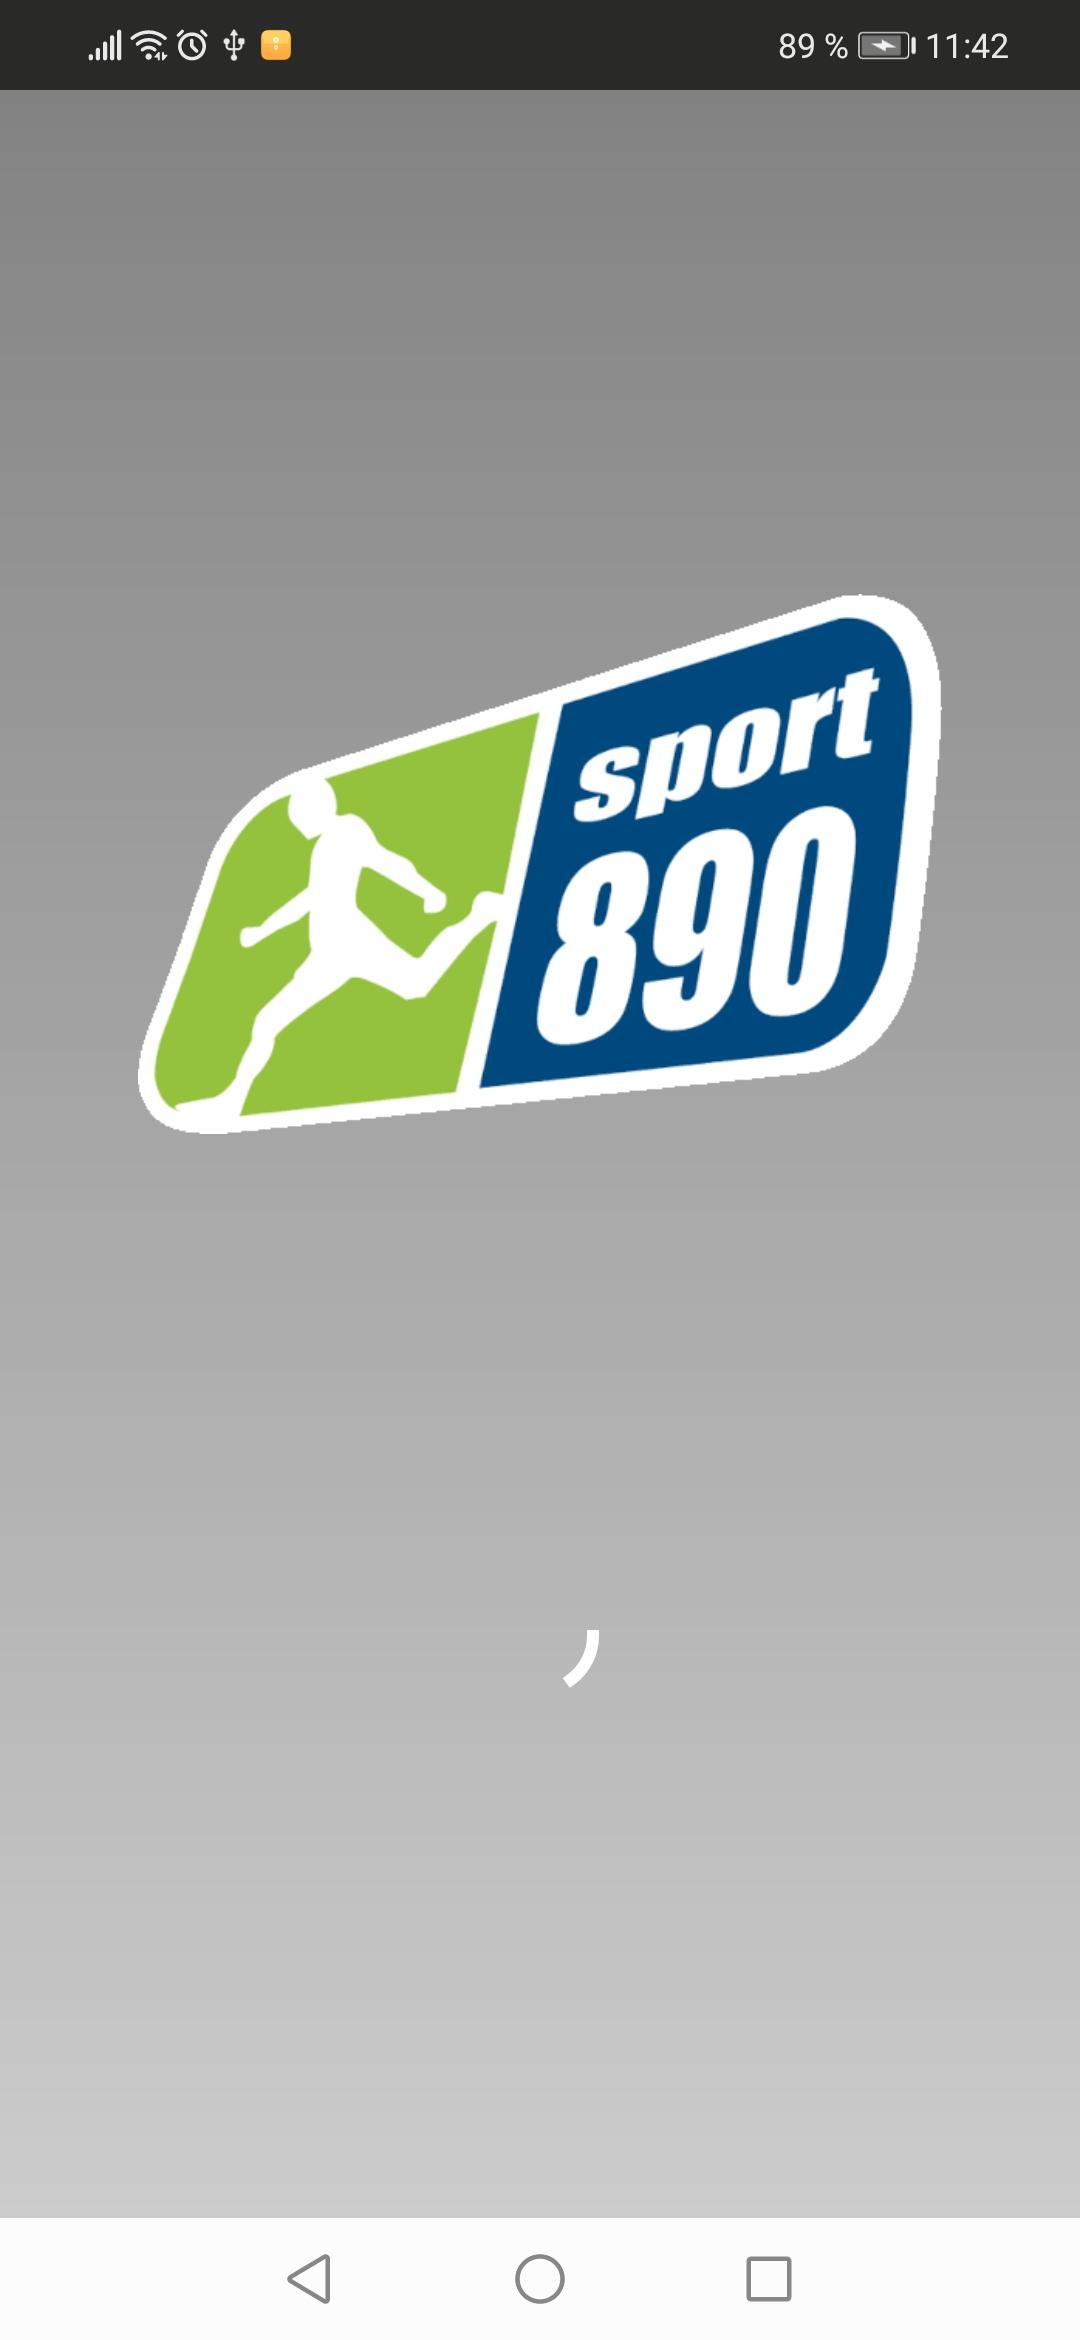 Descarga de APK de Radio Sport 890 para Android